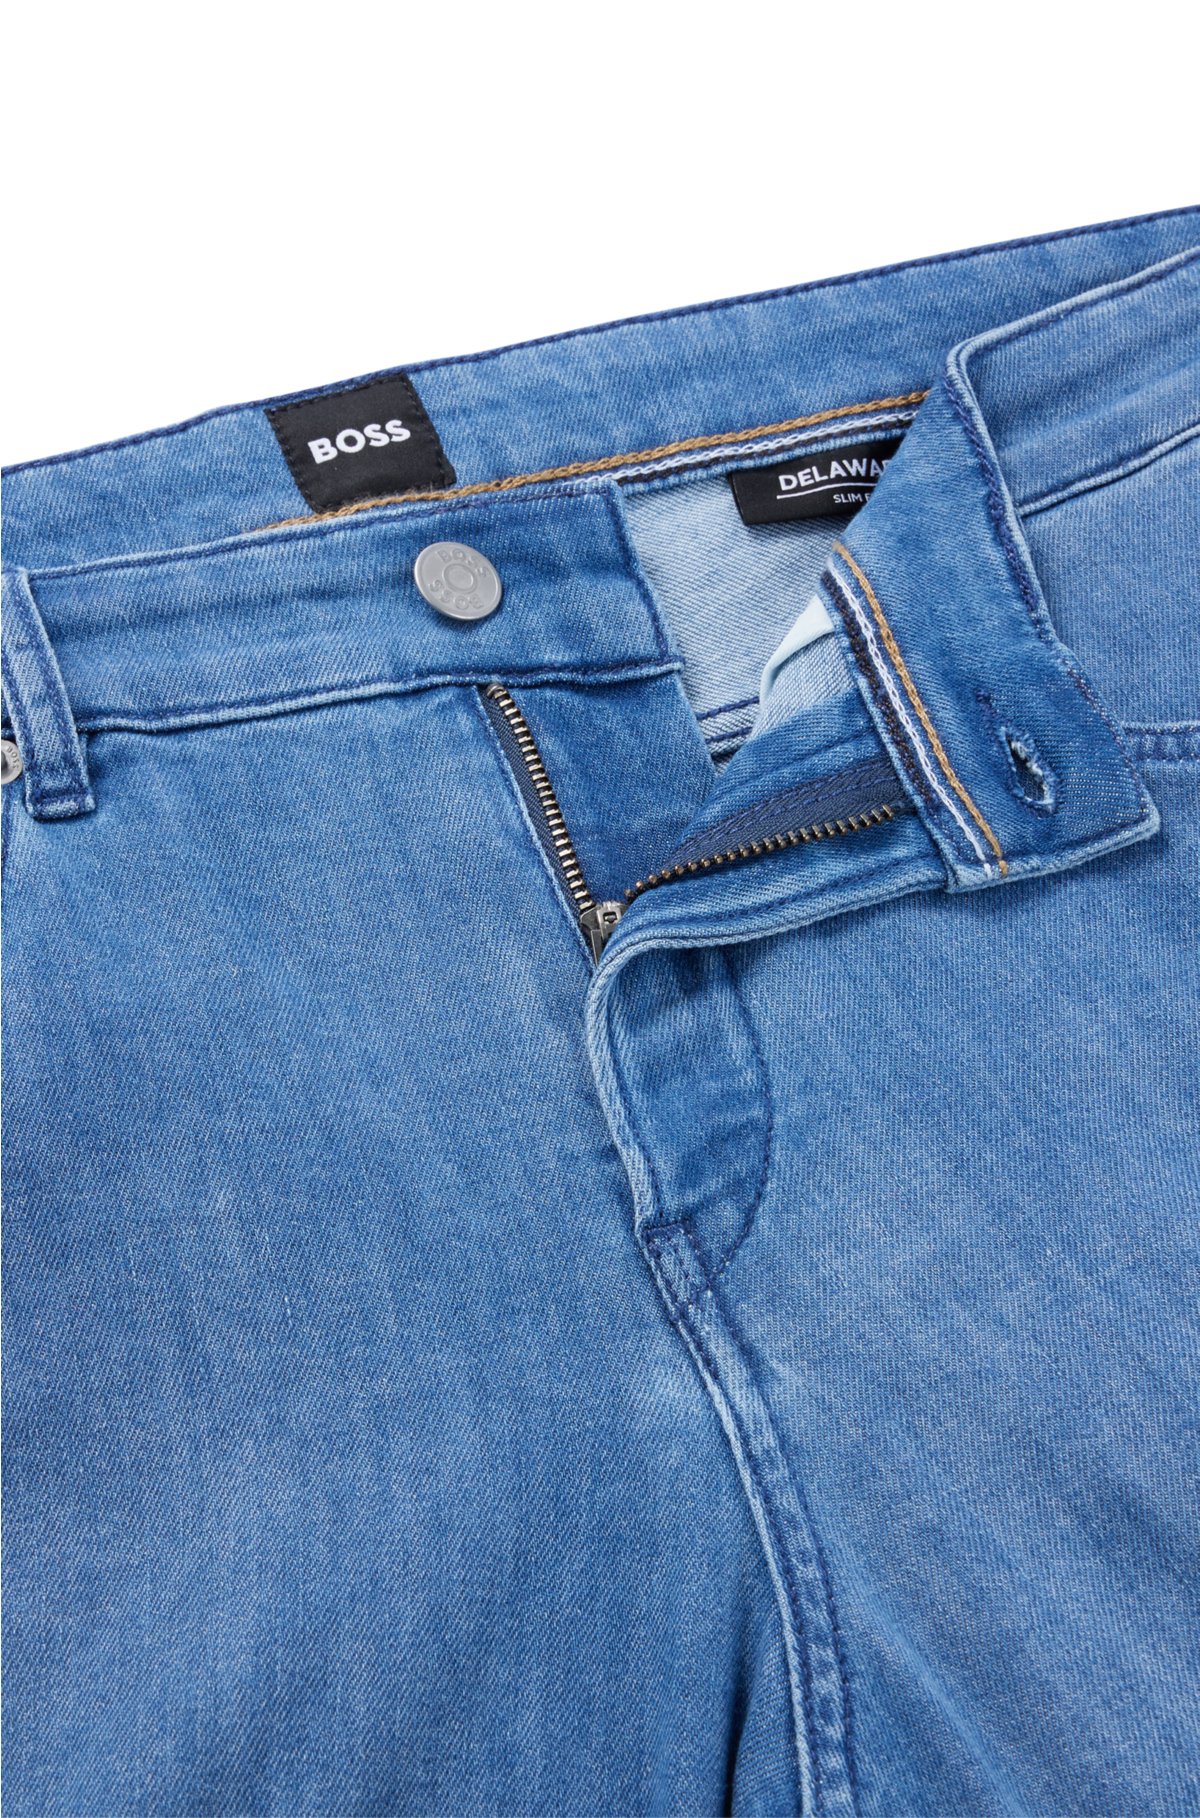 BOSS - Jeans slank pasform i let, lyseblå denim